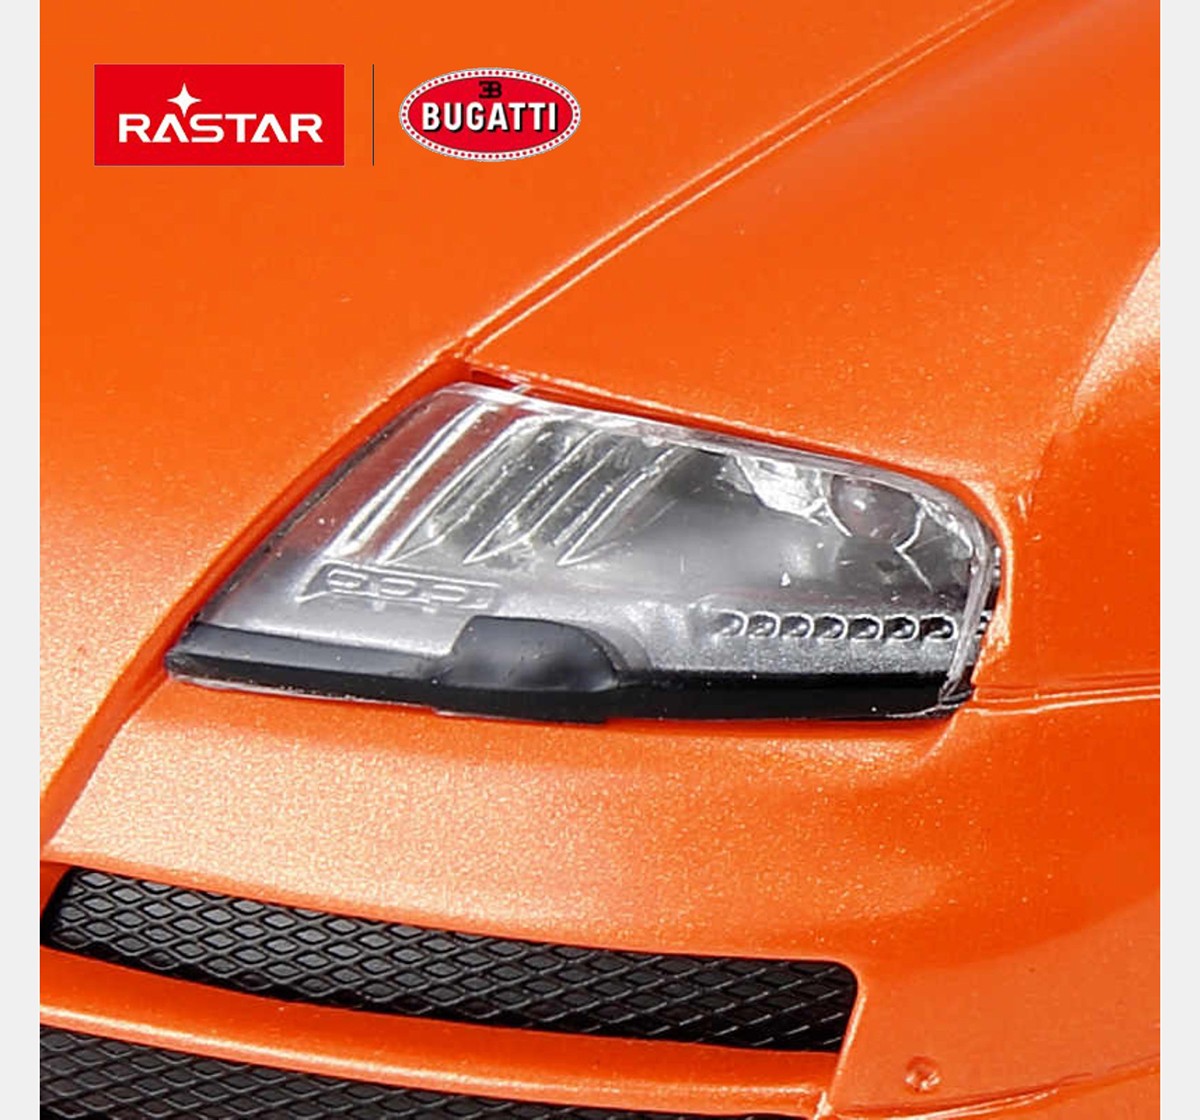 Rastar 1:24 Bugatti Grand Sport Vitesse Remote Control Car, 2Y+ (Multicolor)